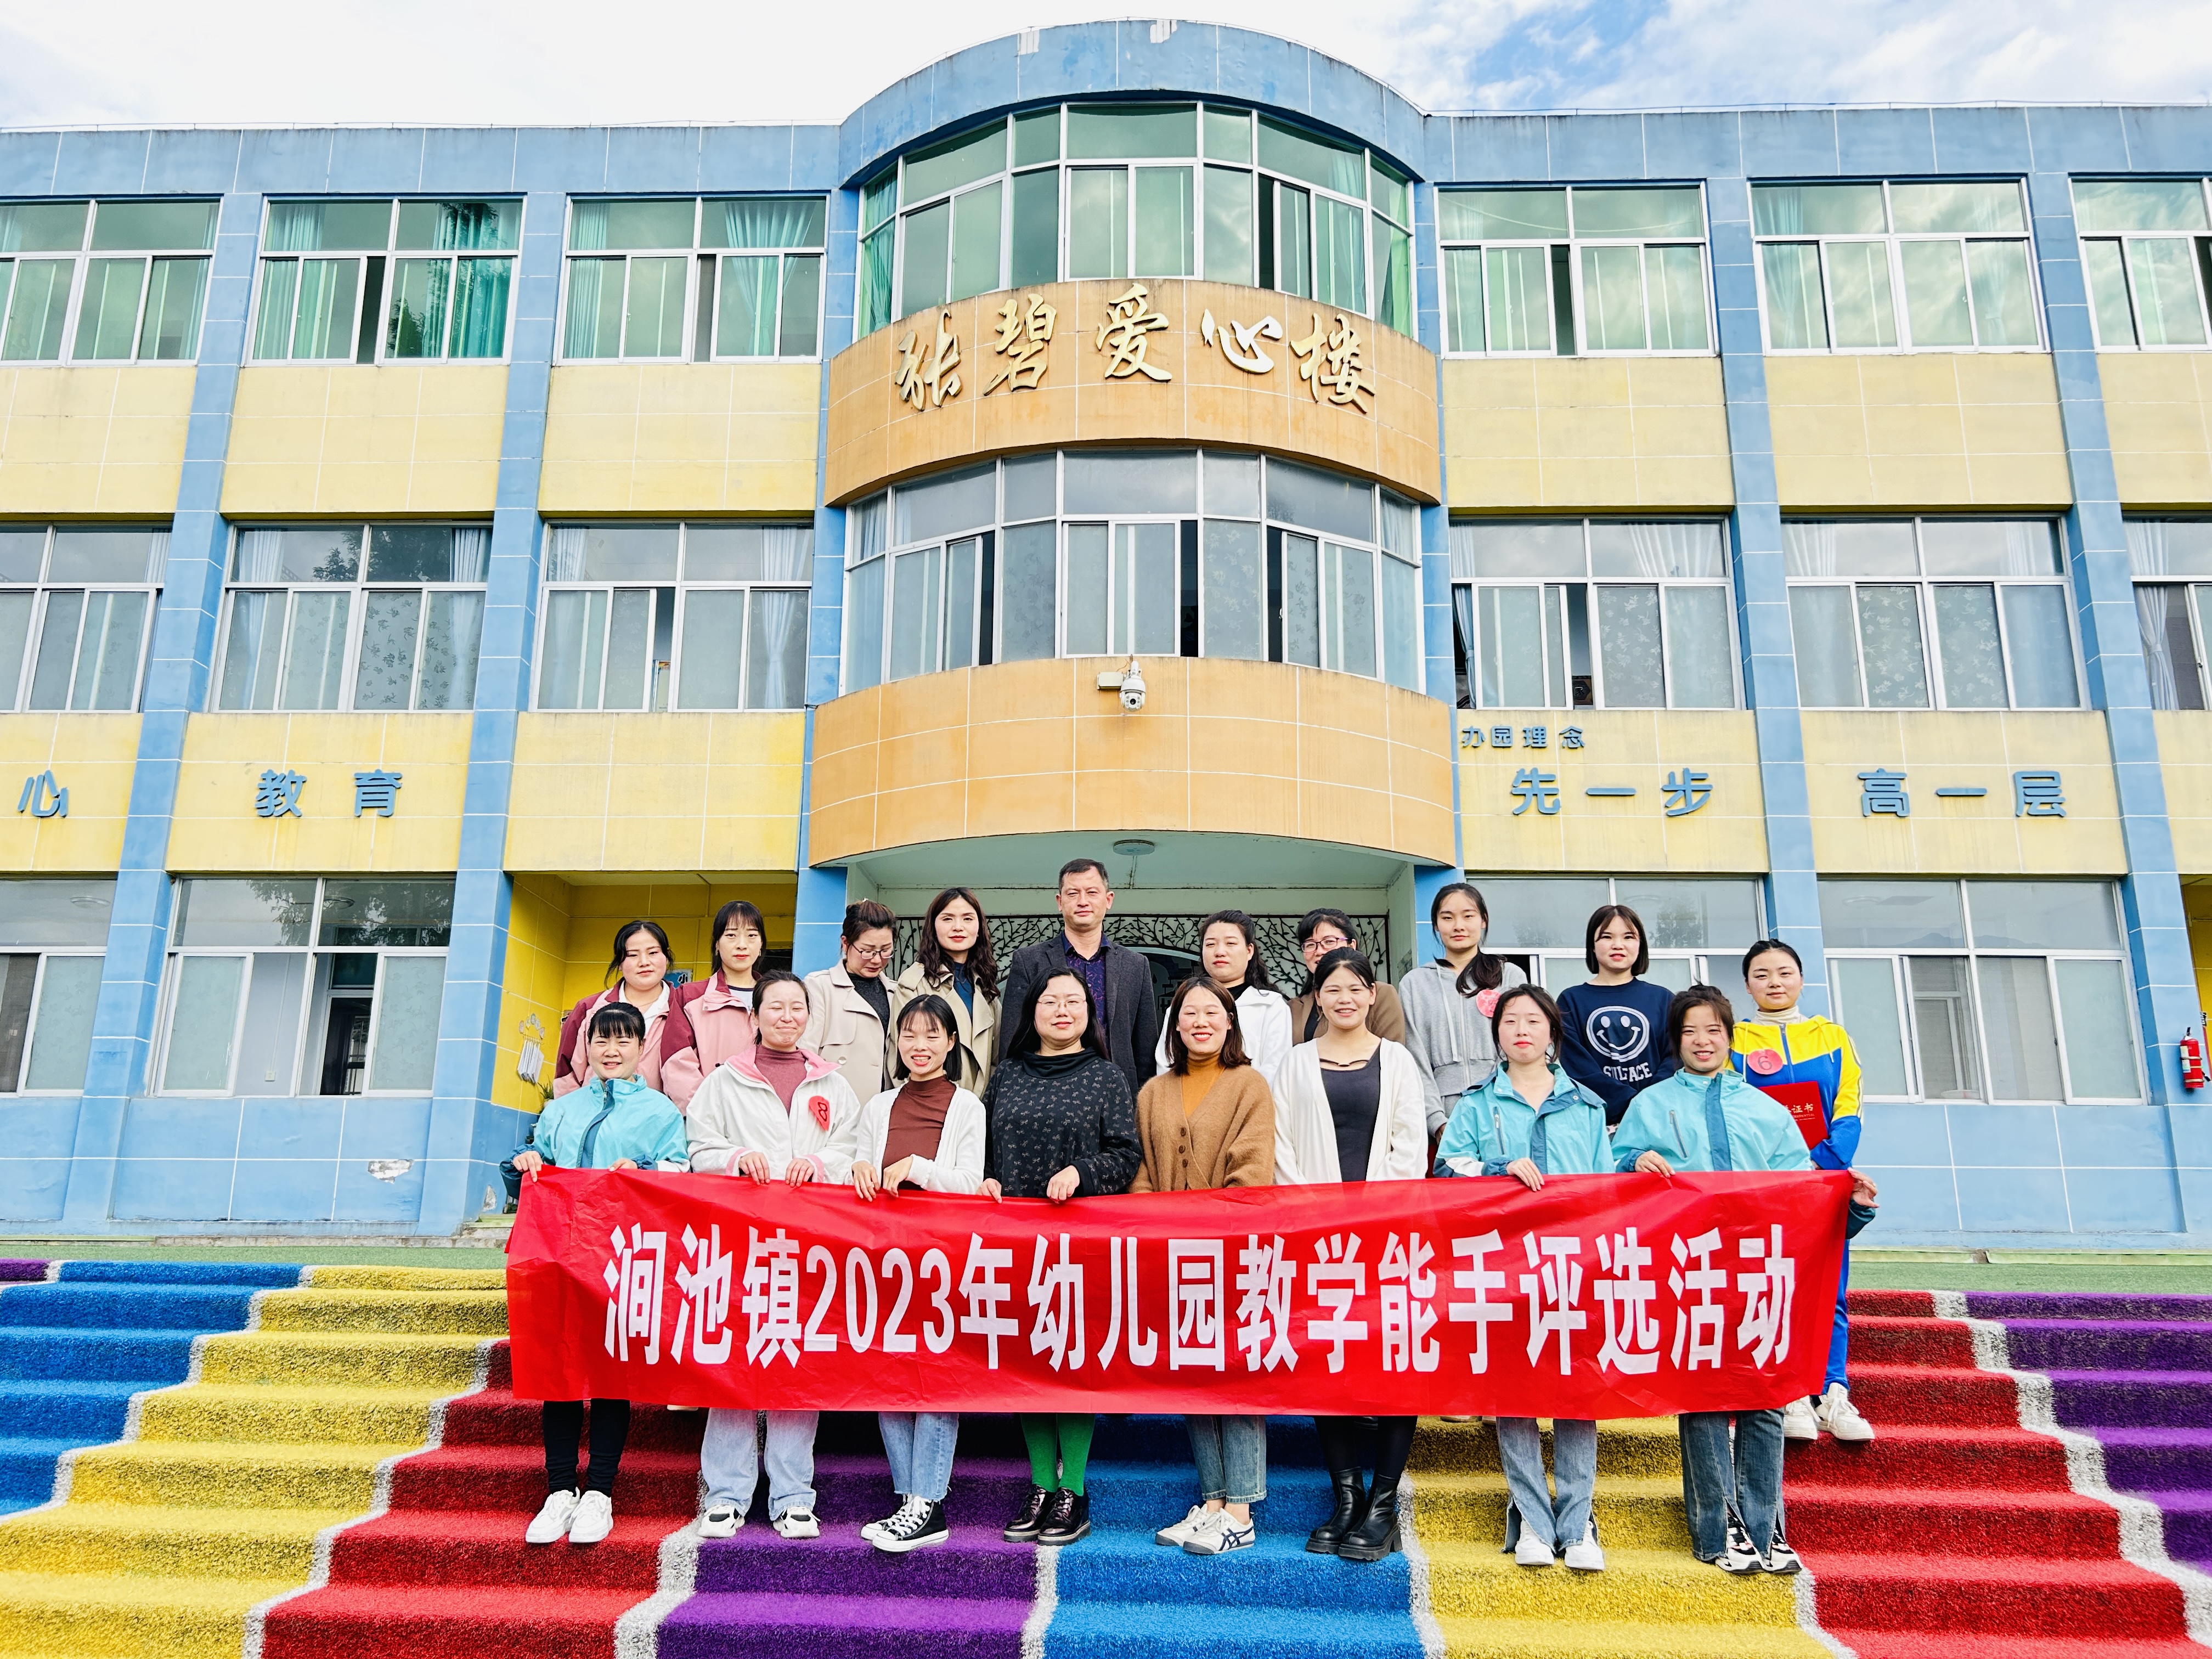 汉阴县涧池镇中心小学举办2023年秋季幼儿园赛教活动